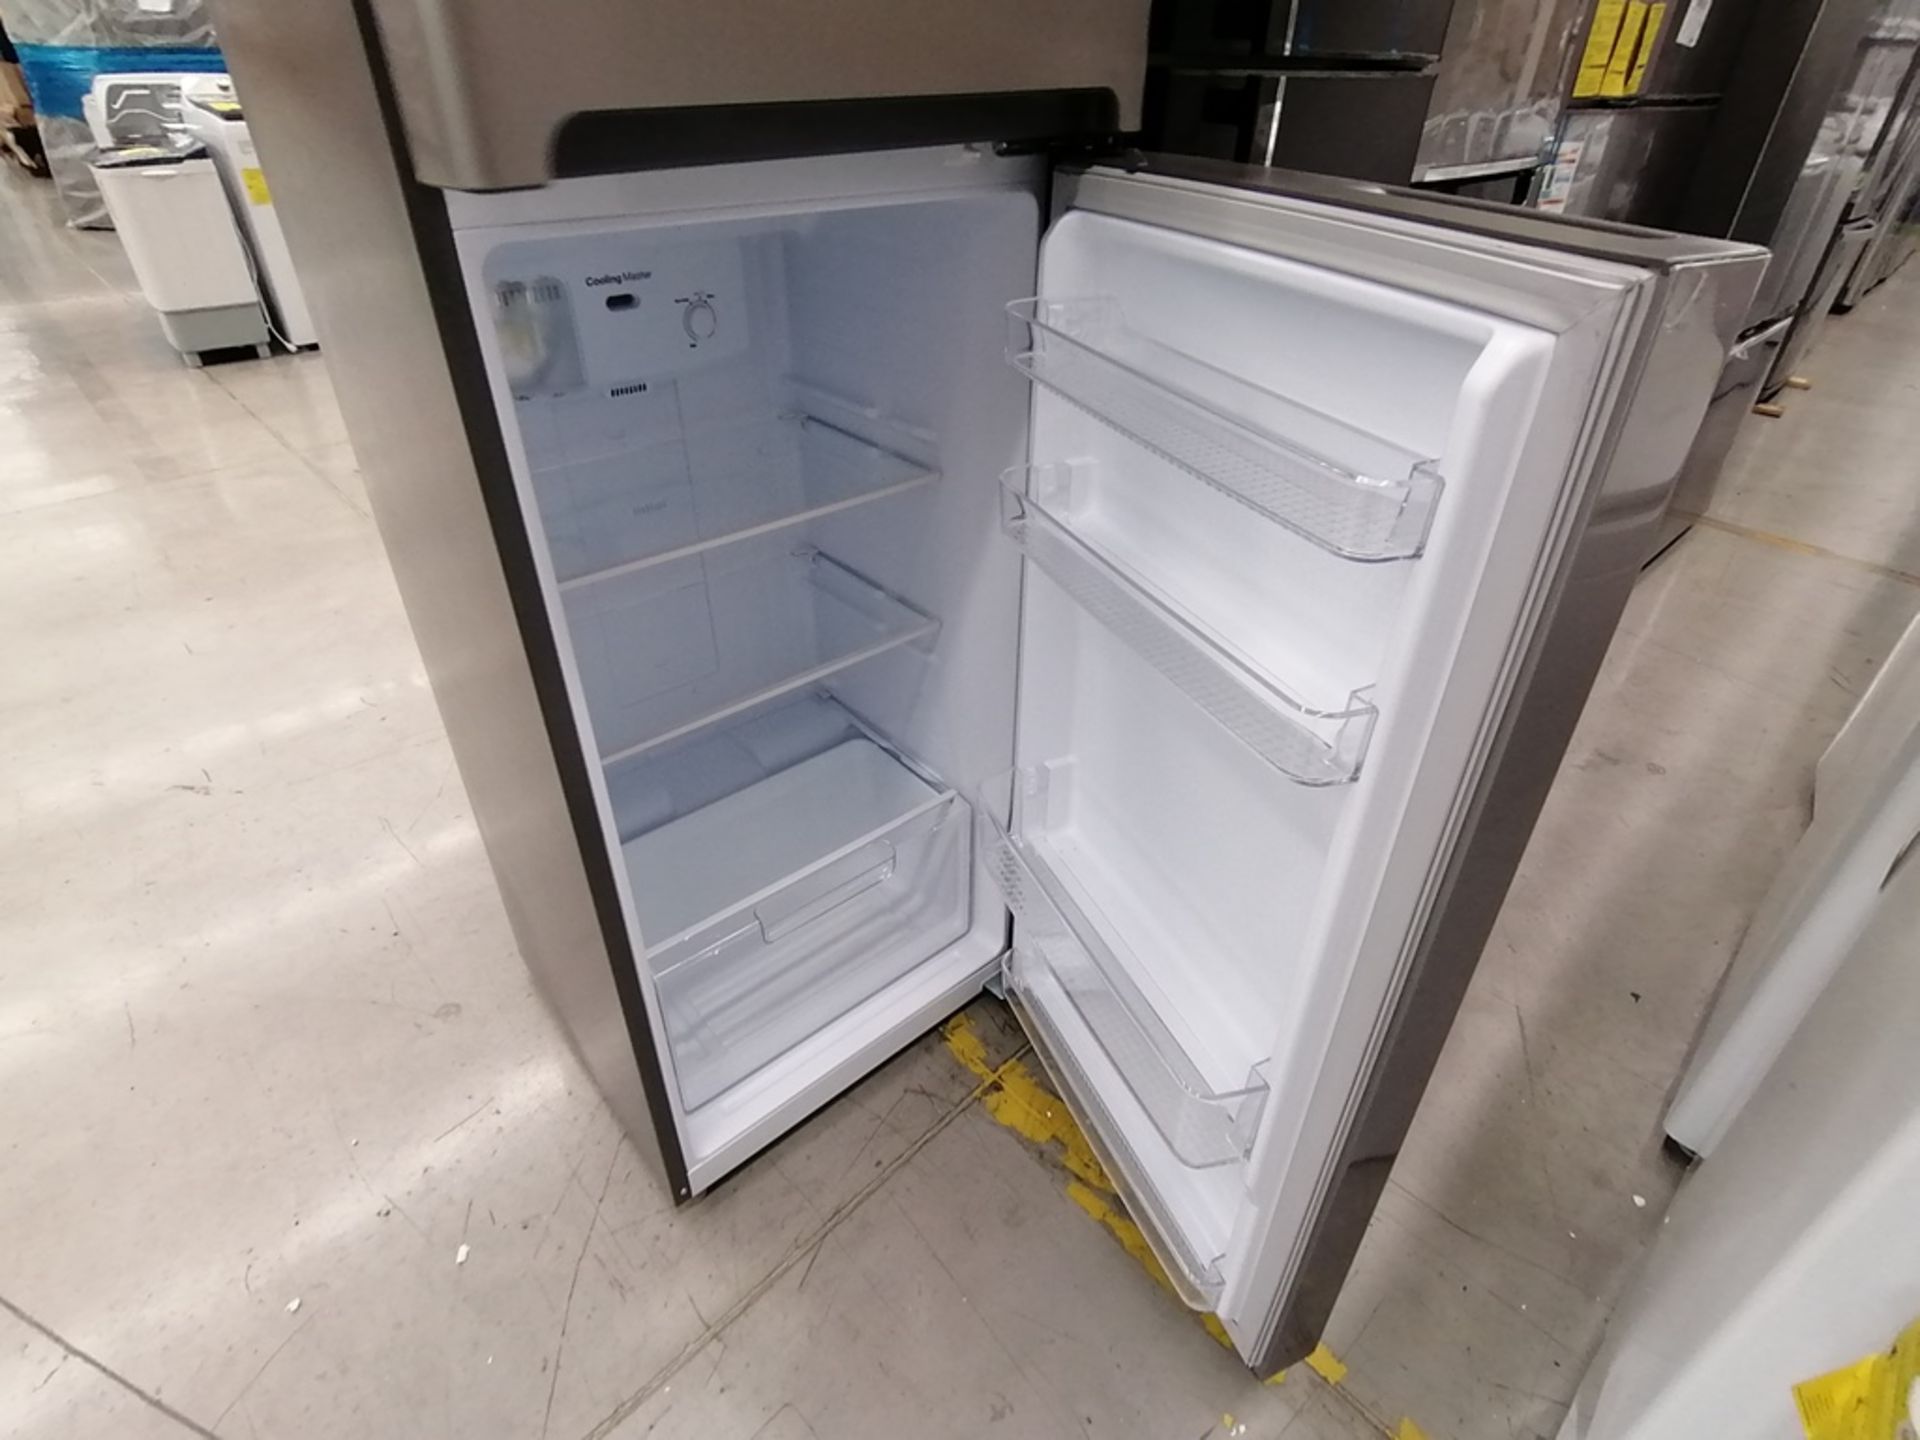 Lote de 2 refrigeradores incluye: 1 Refrigerador, Marca Winia, Modelo DFR32210GNV, Serie MR219N1206 - Image 5 of 15